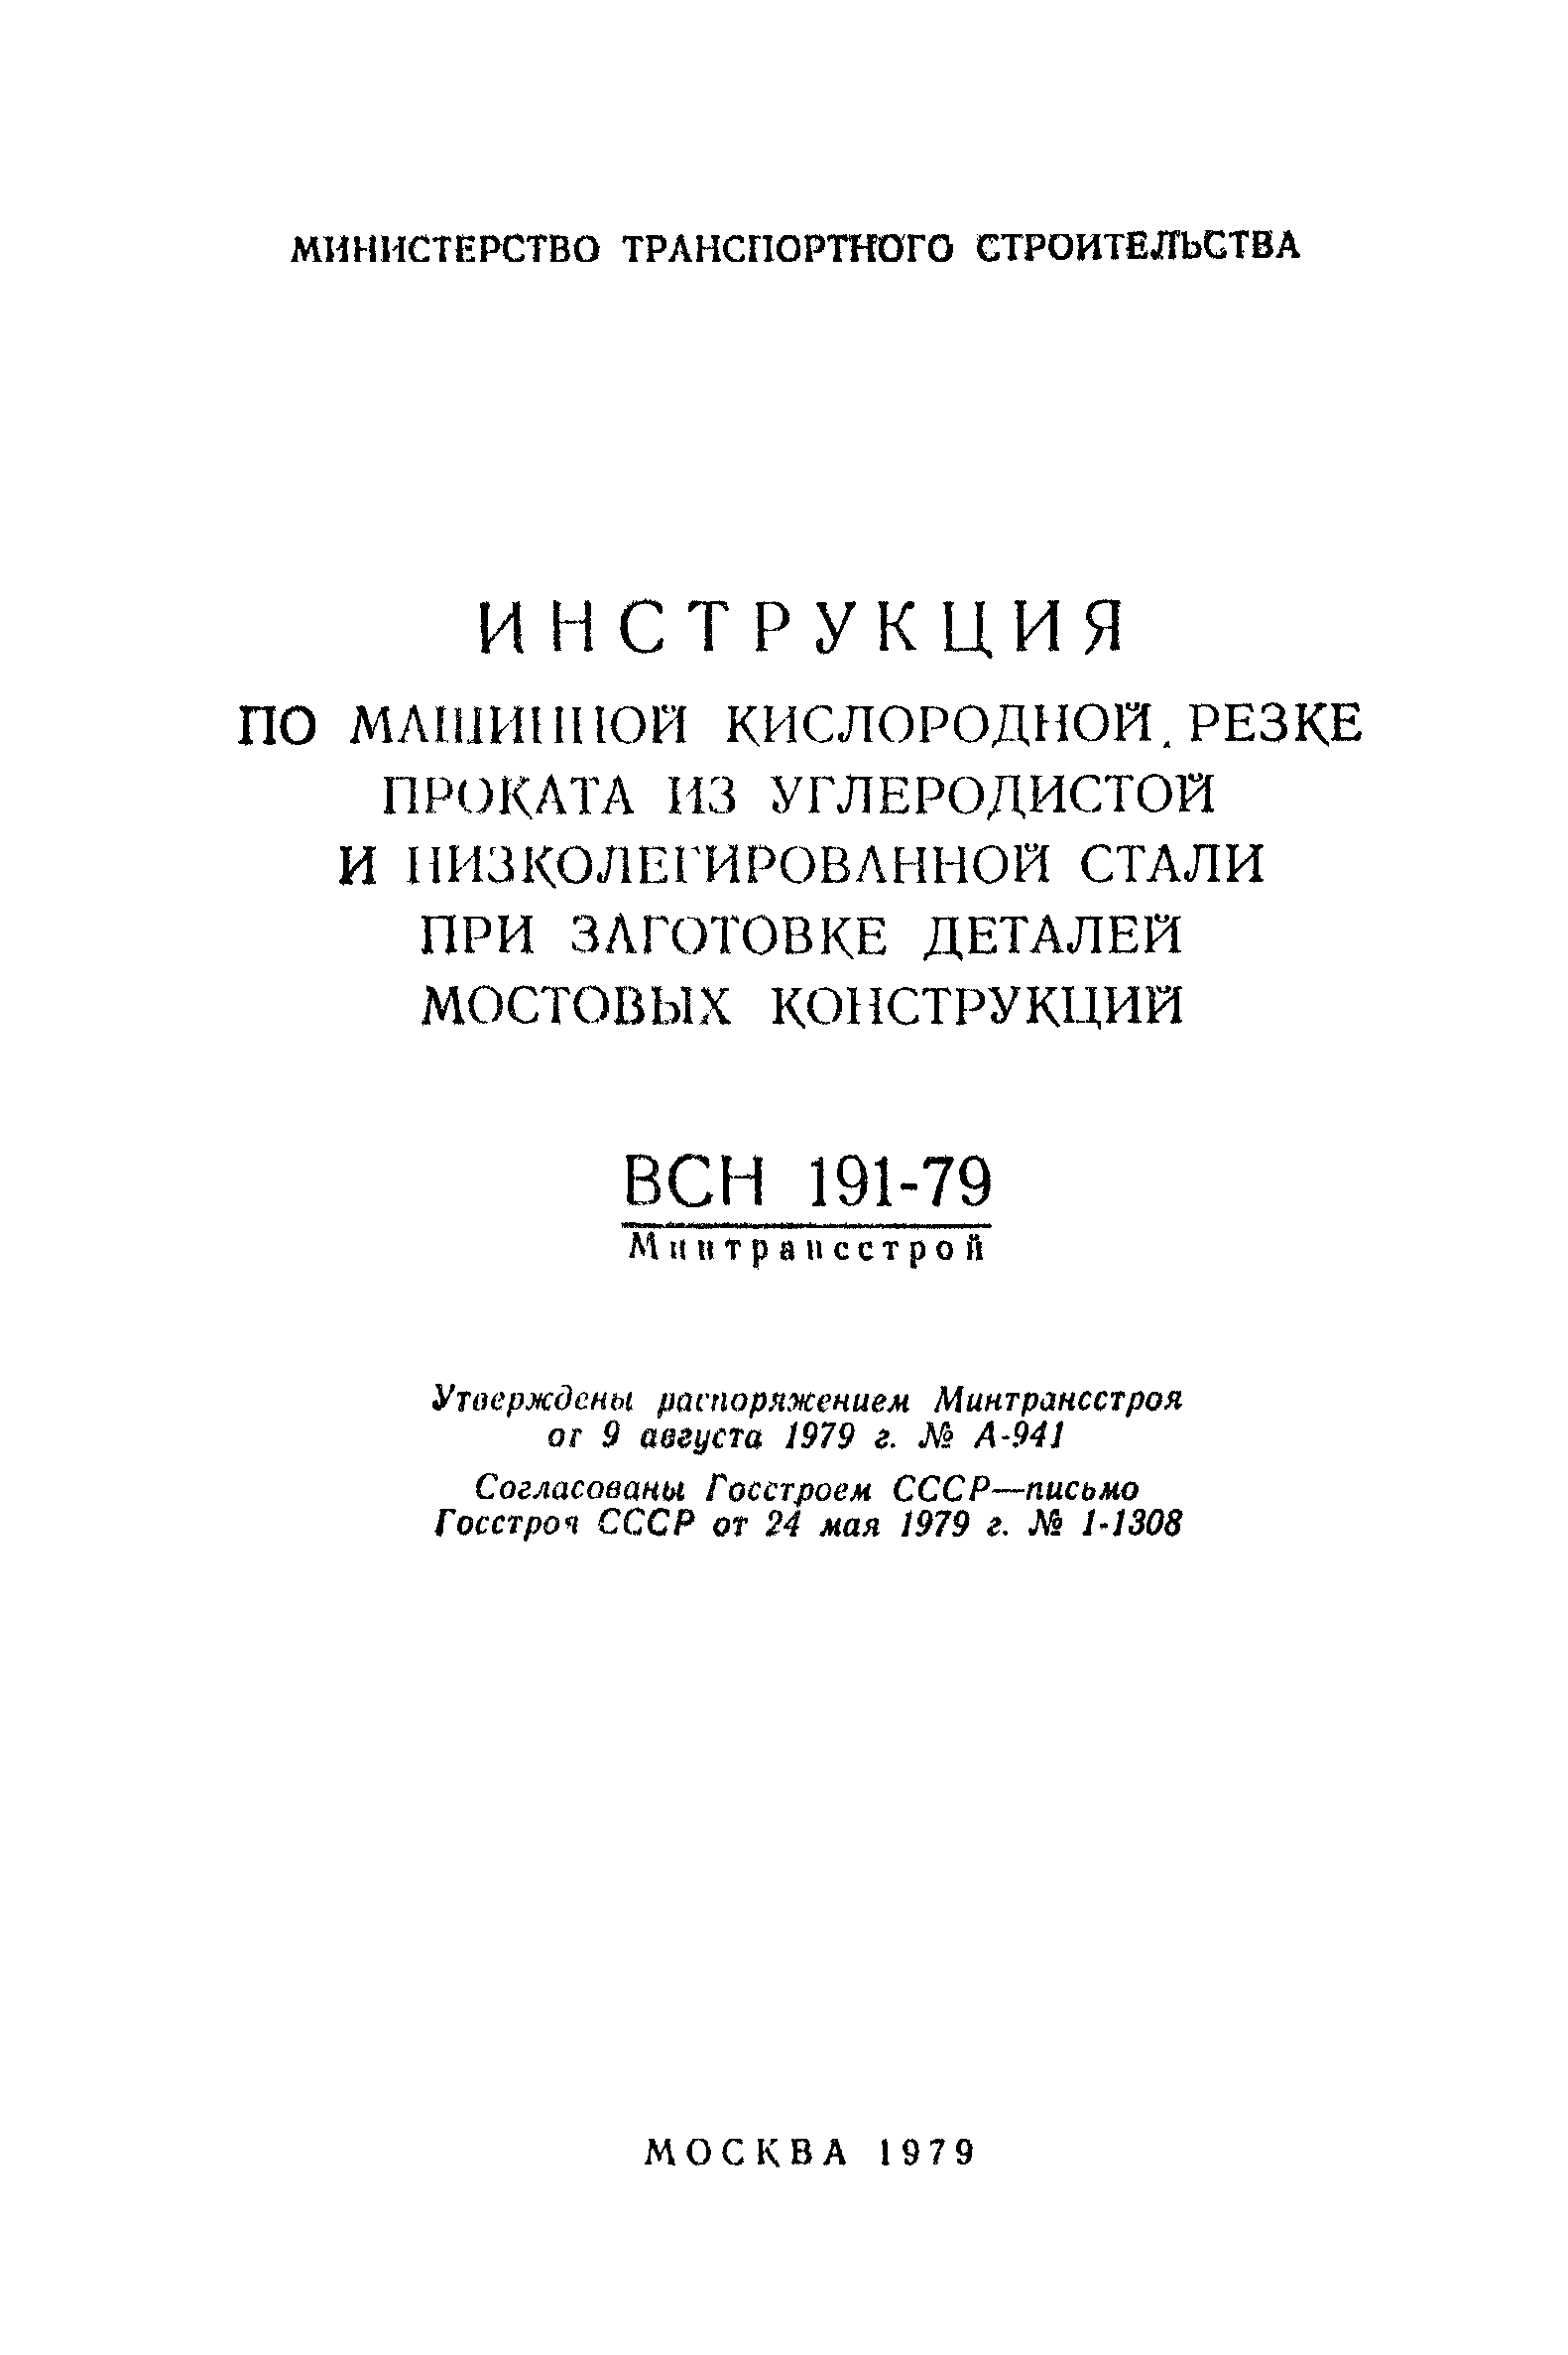 ВСН 191-79